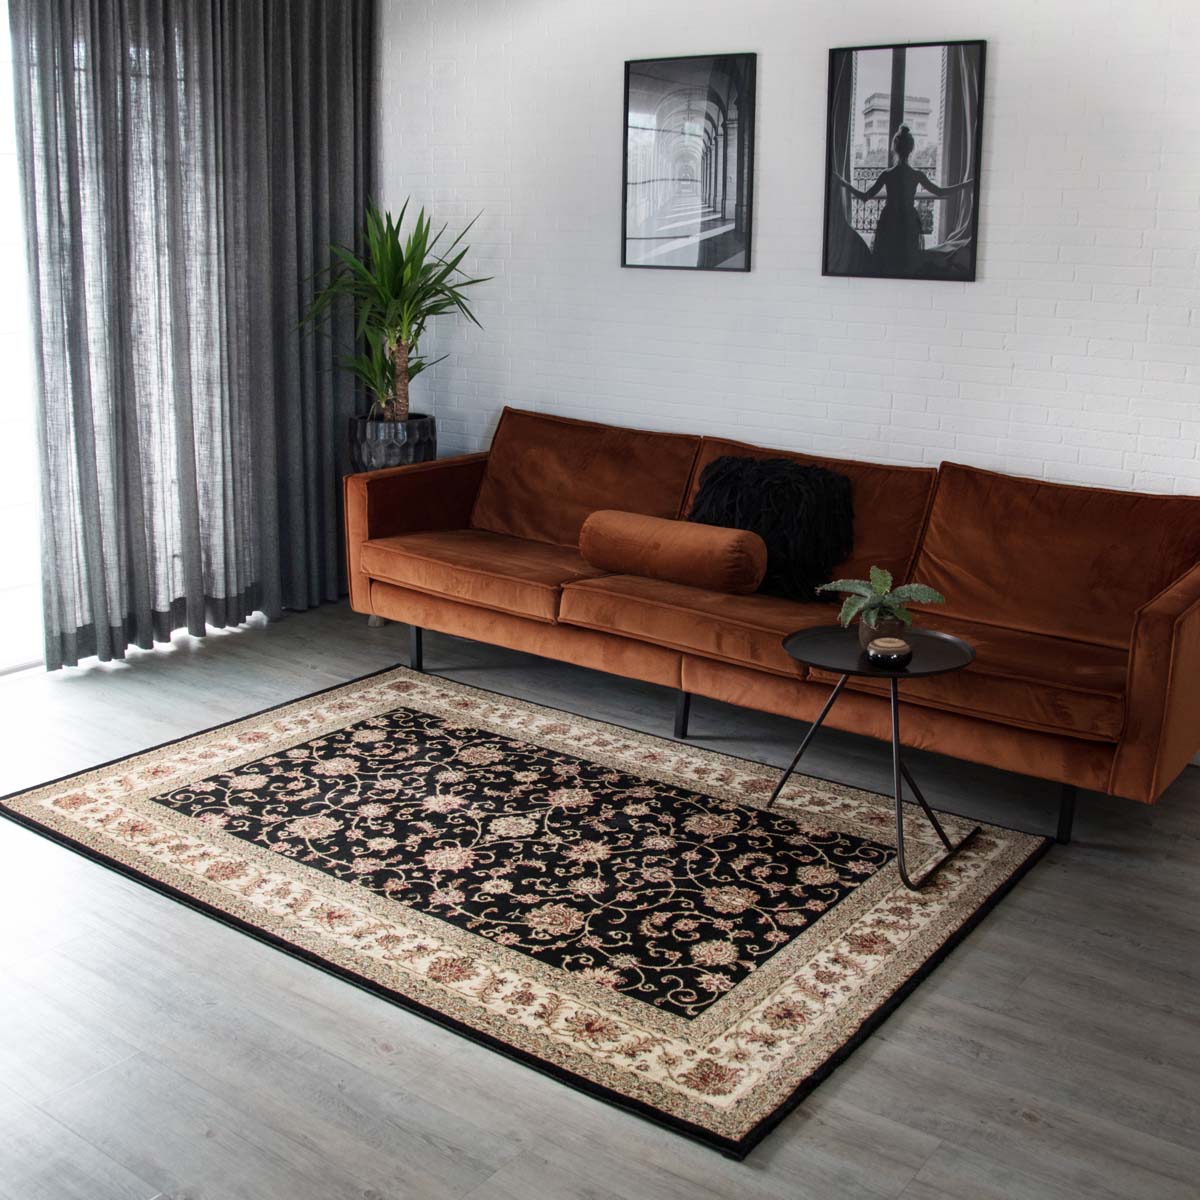 Zuidoost Riskeren Verpletteren Design perzisch tapijt Royalty - zwart/crème | Tapeso